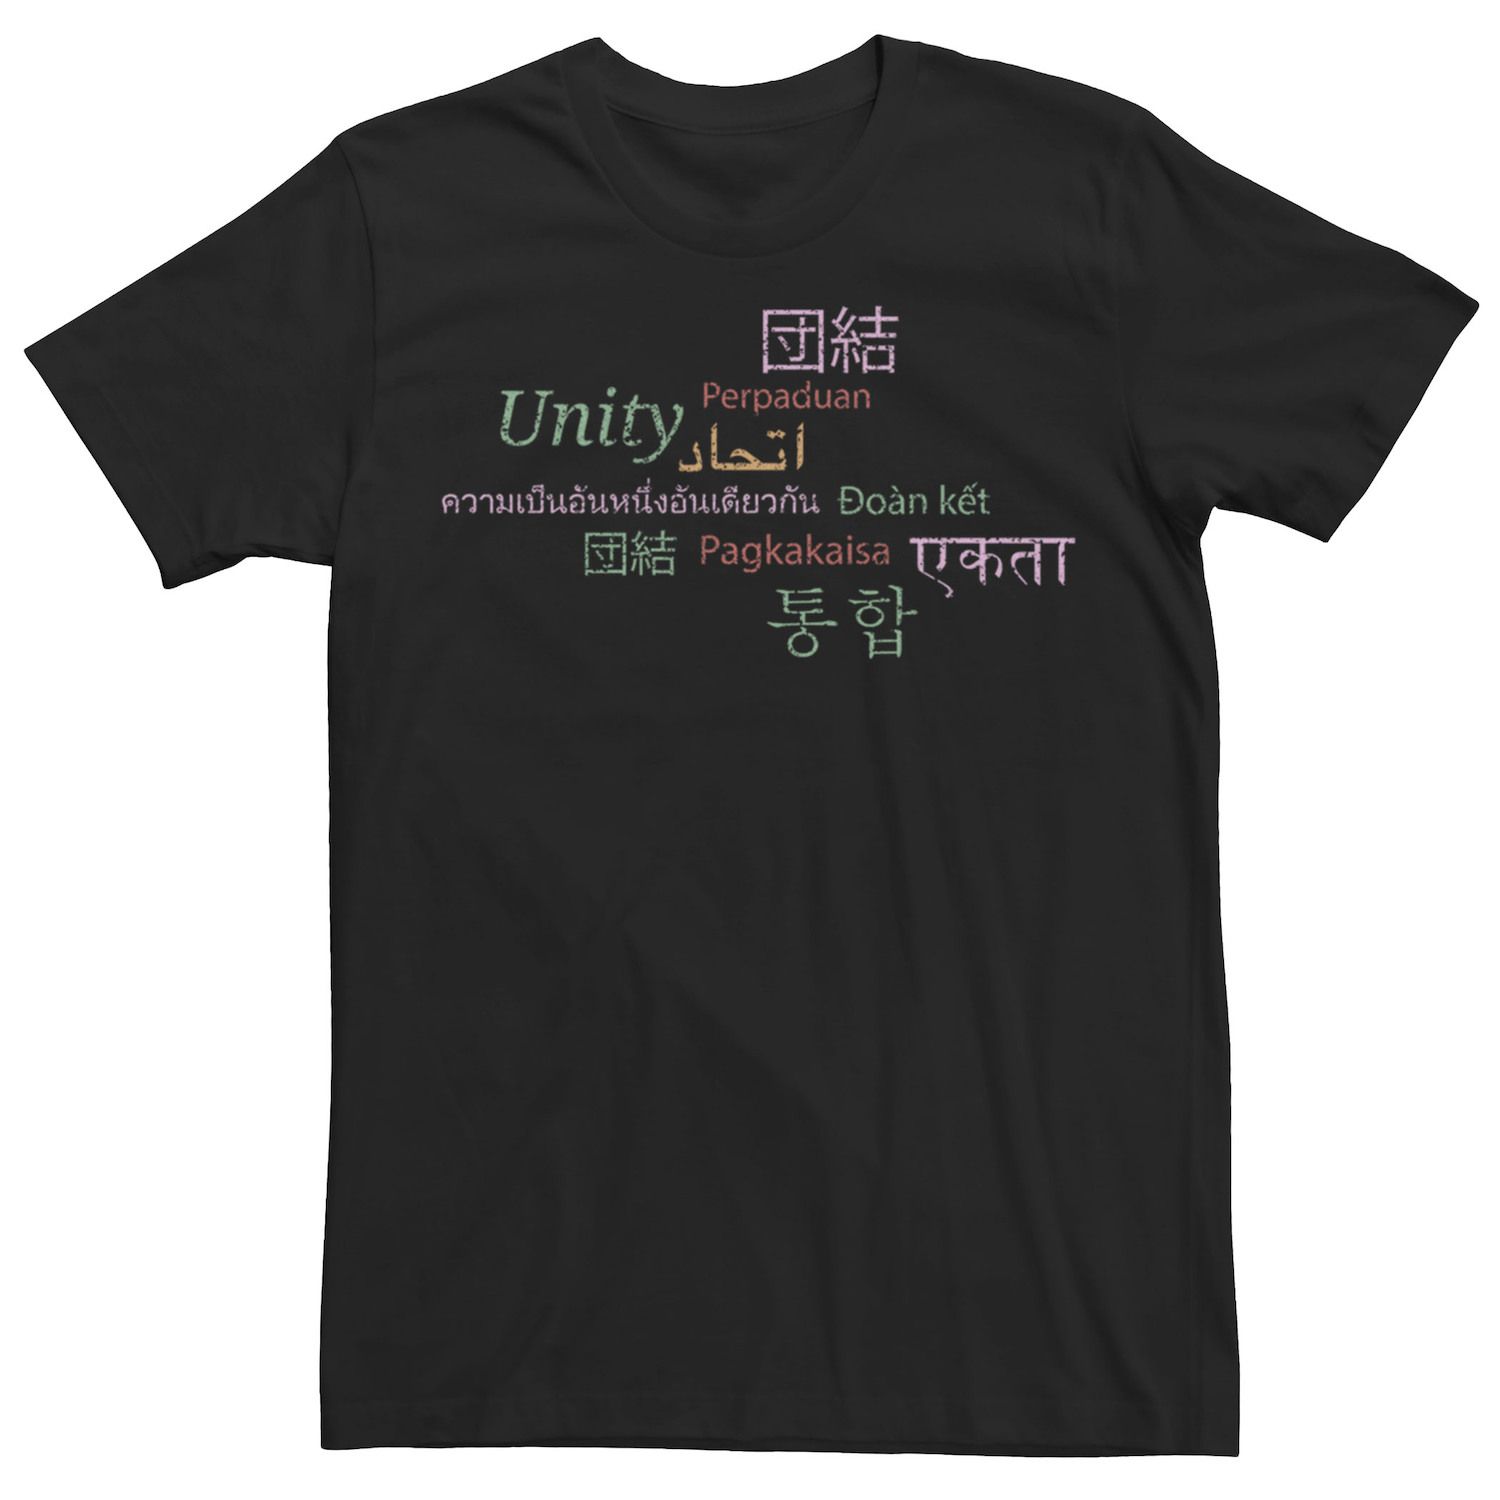 Мужская футболка Unity Languages Licensed Character